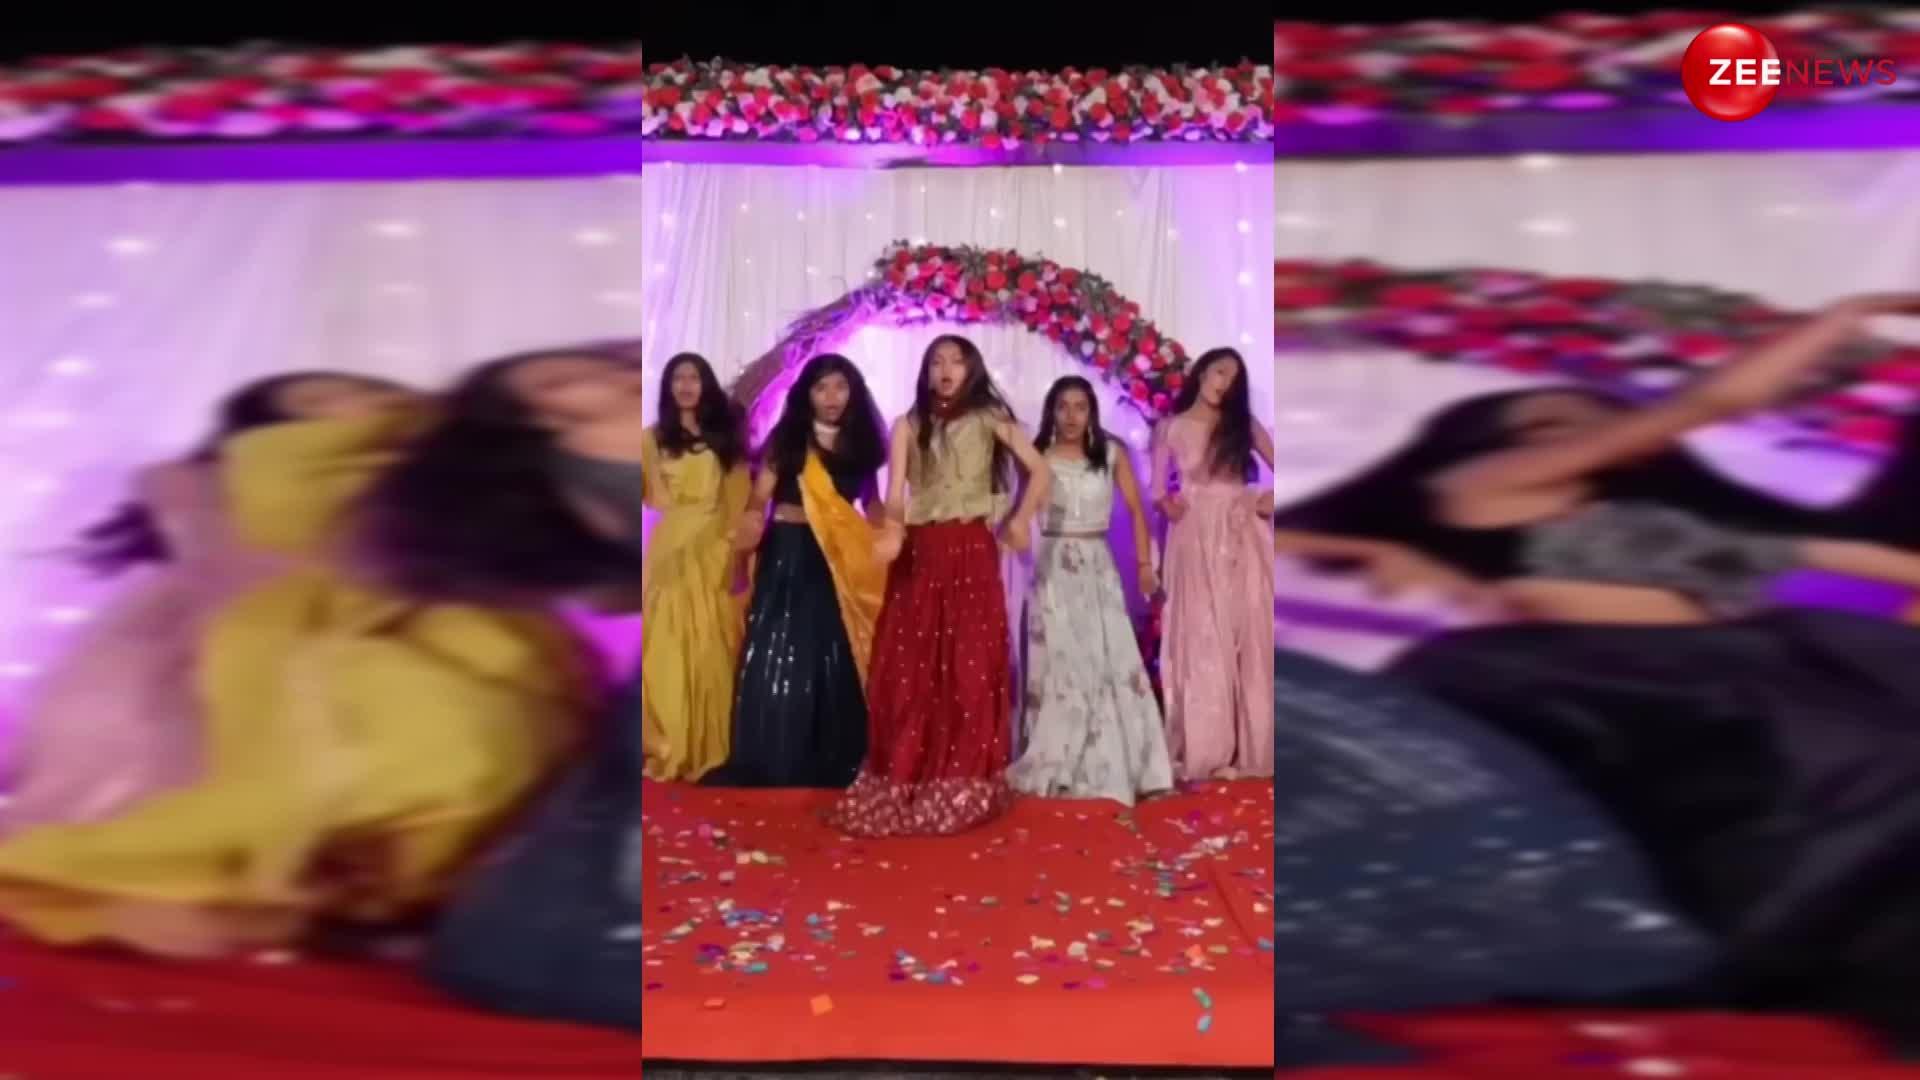 Girls Dance Video: दुल्हन की सहेलियों ने शादी में लगाए ऐसे ठुमके, देख बारातियों ने लिए खूब मजे